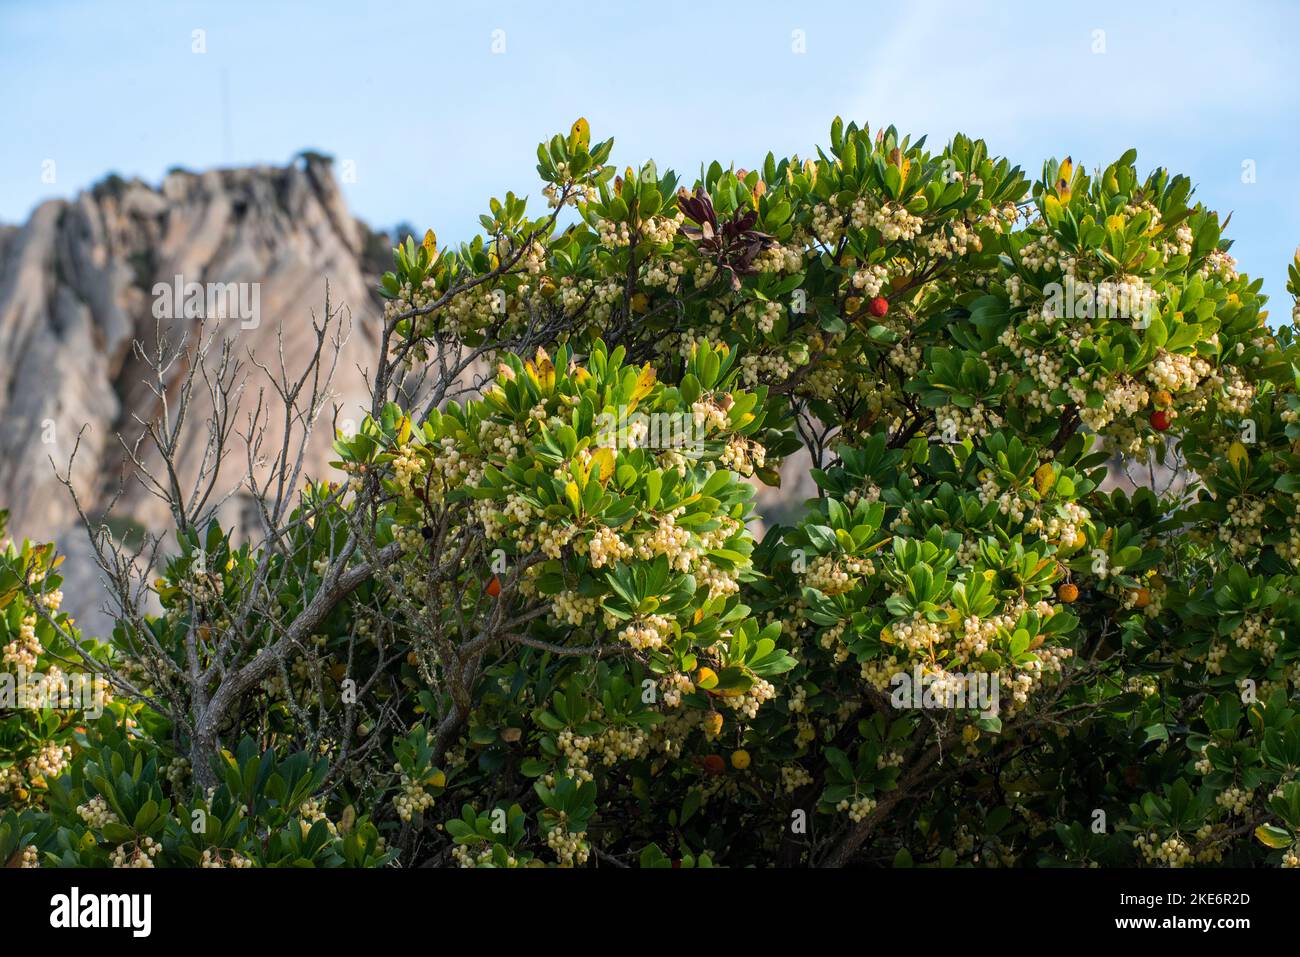 Il corbezzolo, è uno degli arbusti più rappresentativi della Macchia mediterranea. Dai suoi frutti, si ottiene un'ottima marmellata. Stockfoto